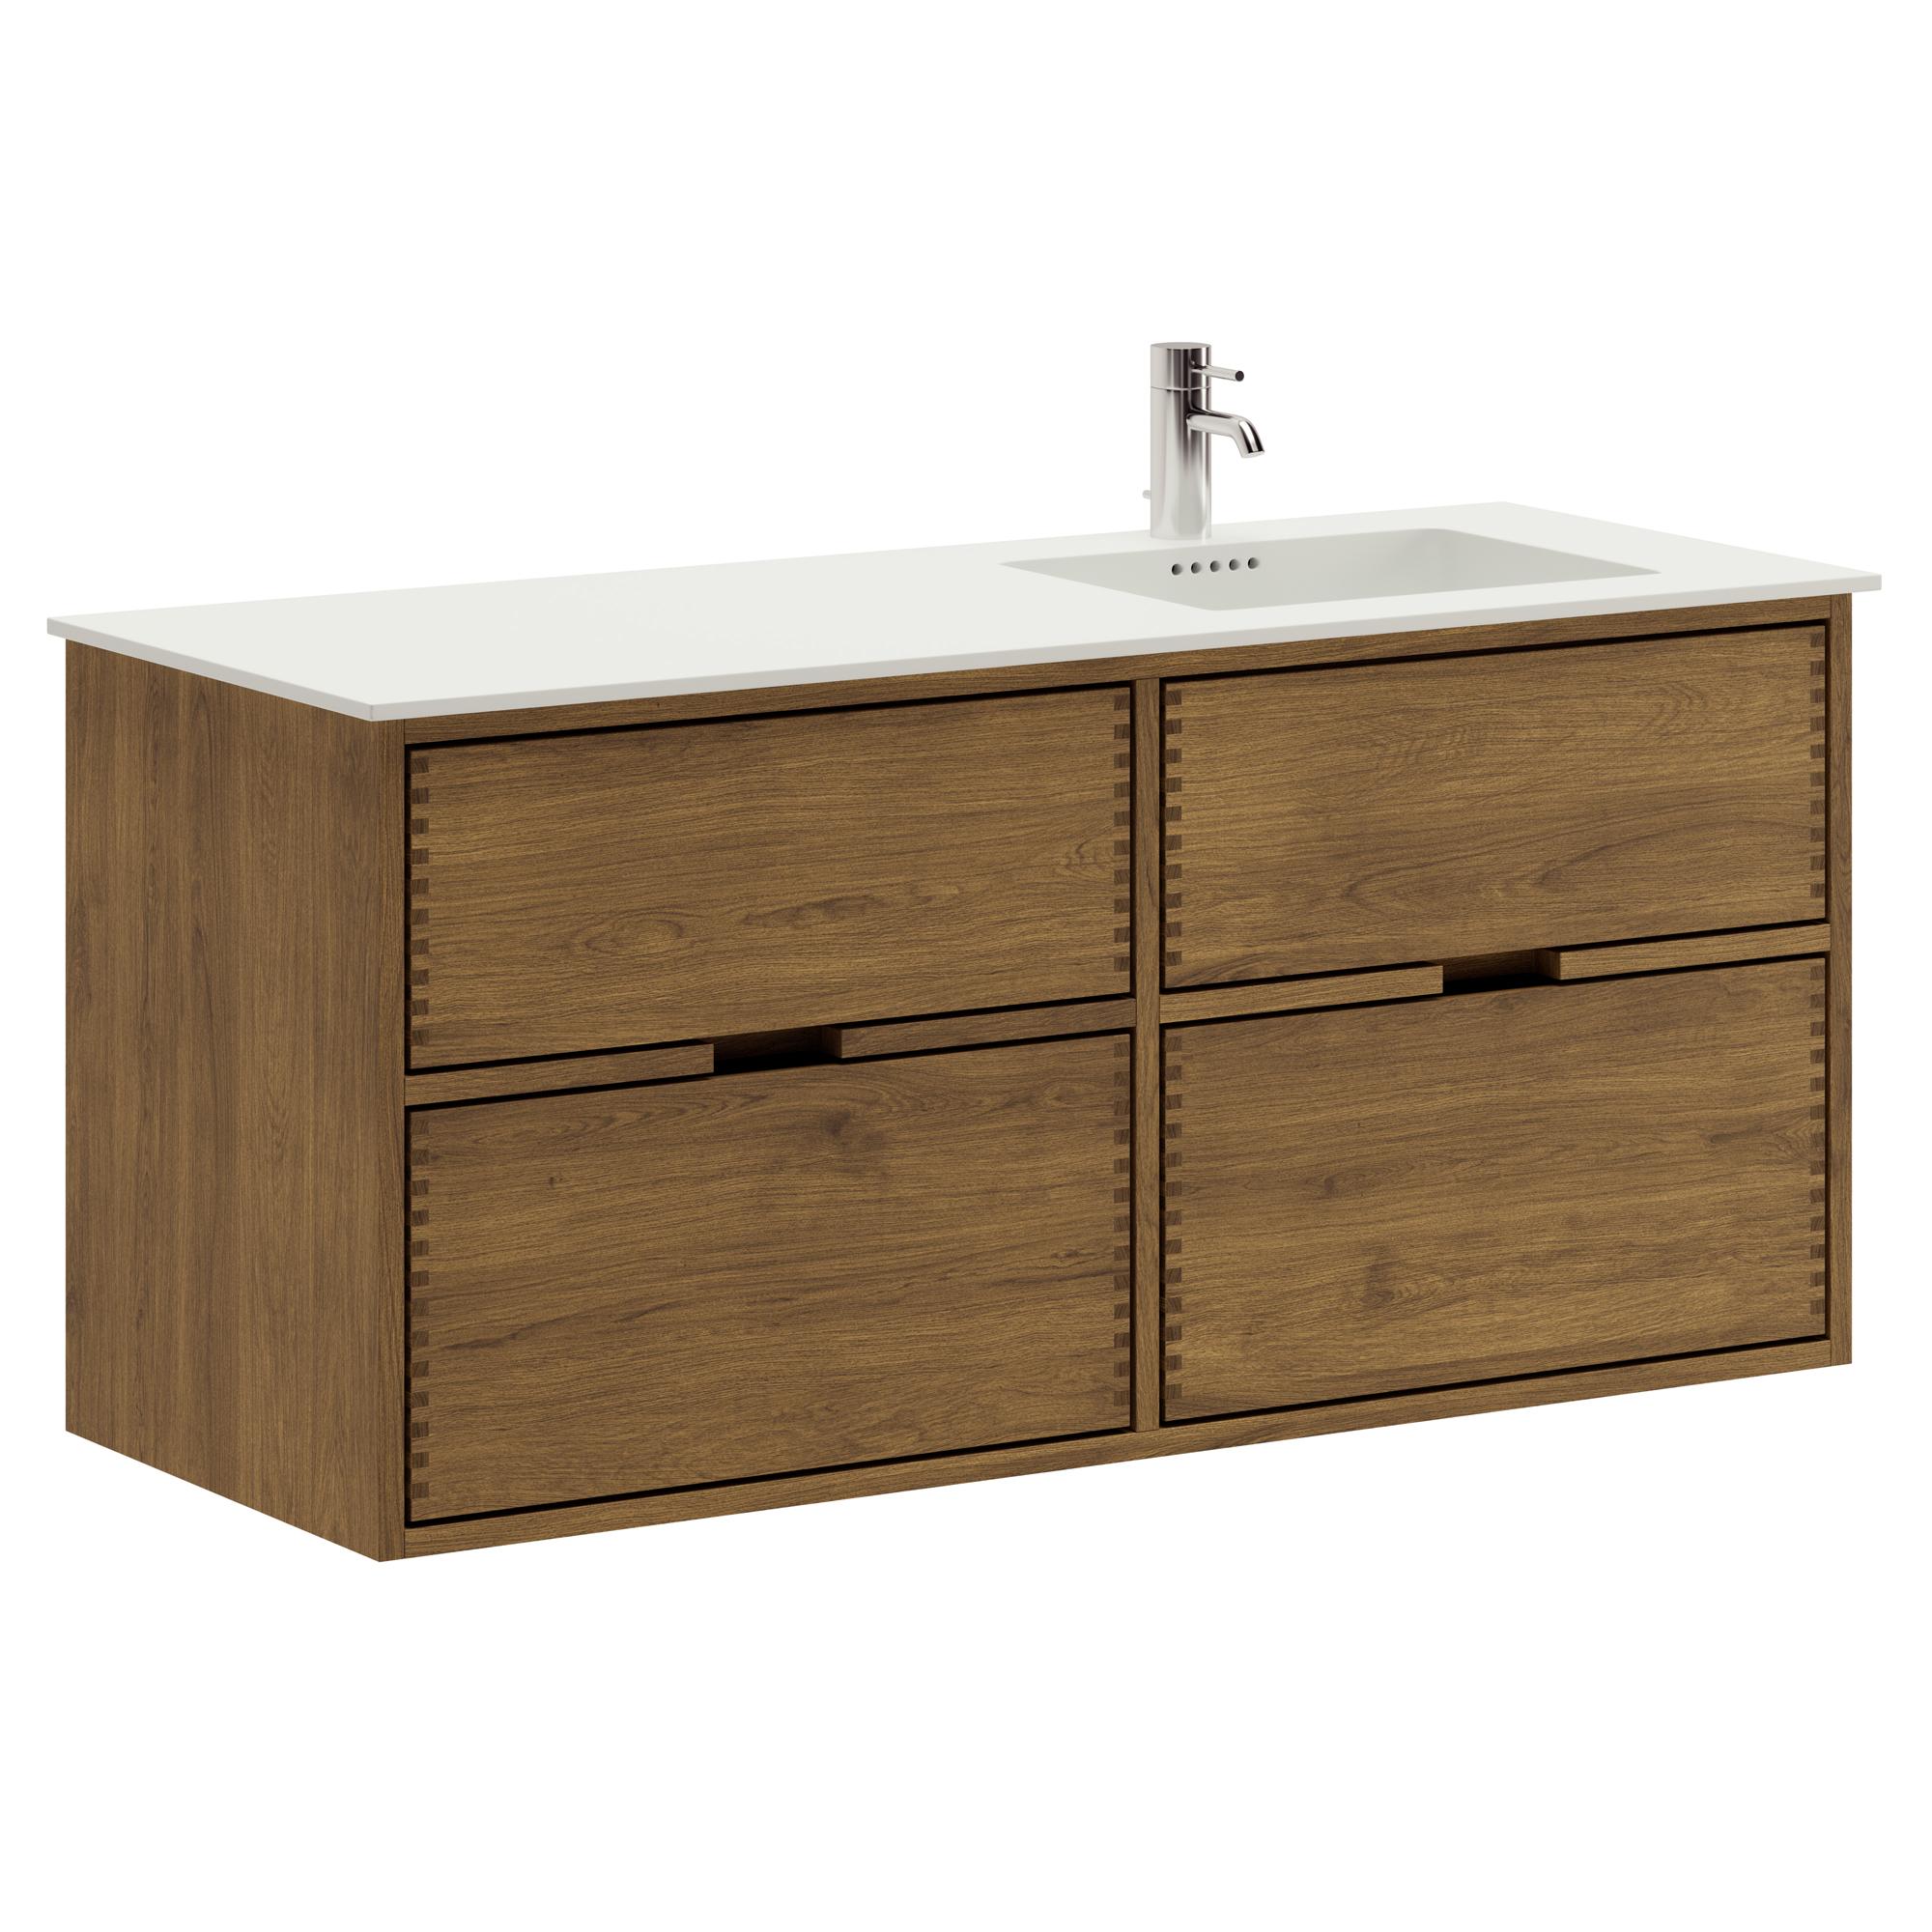 120 cm dunkel-geölter Just Wood Badezimmermöbel mit 4 Schubladen und Solid Surface-Waschbecken - Rechts